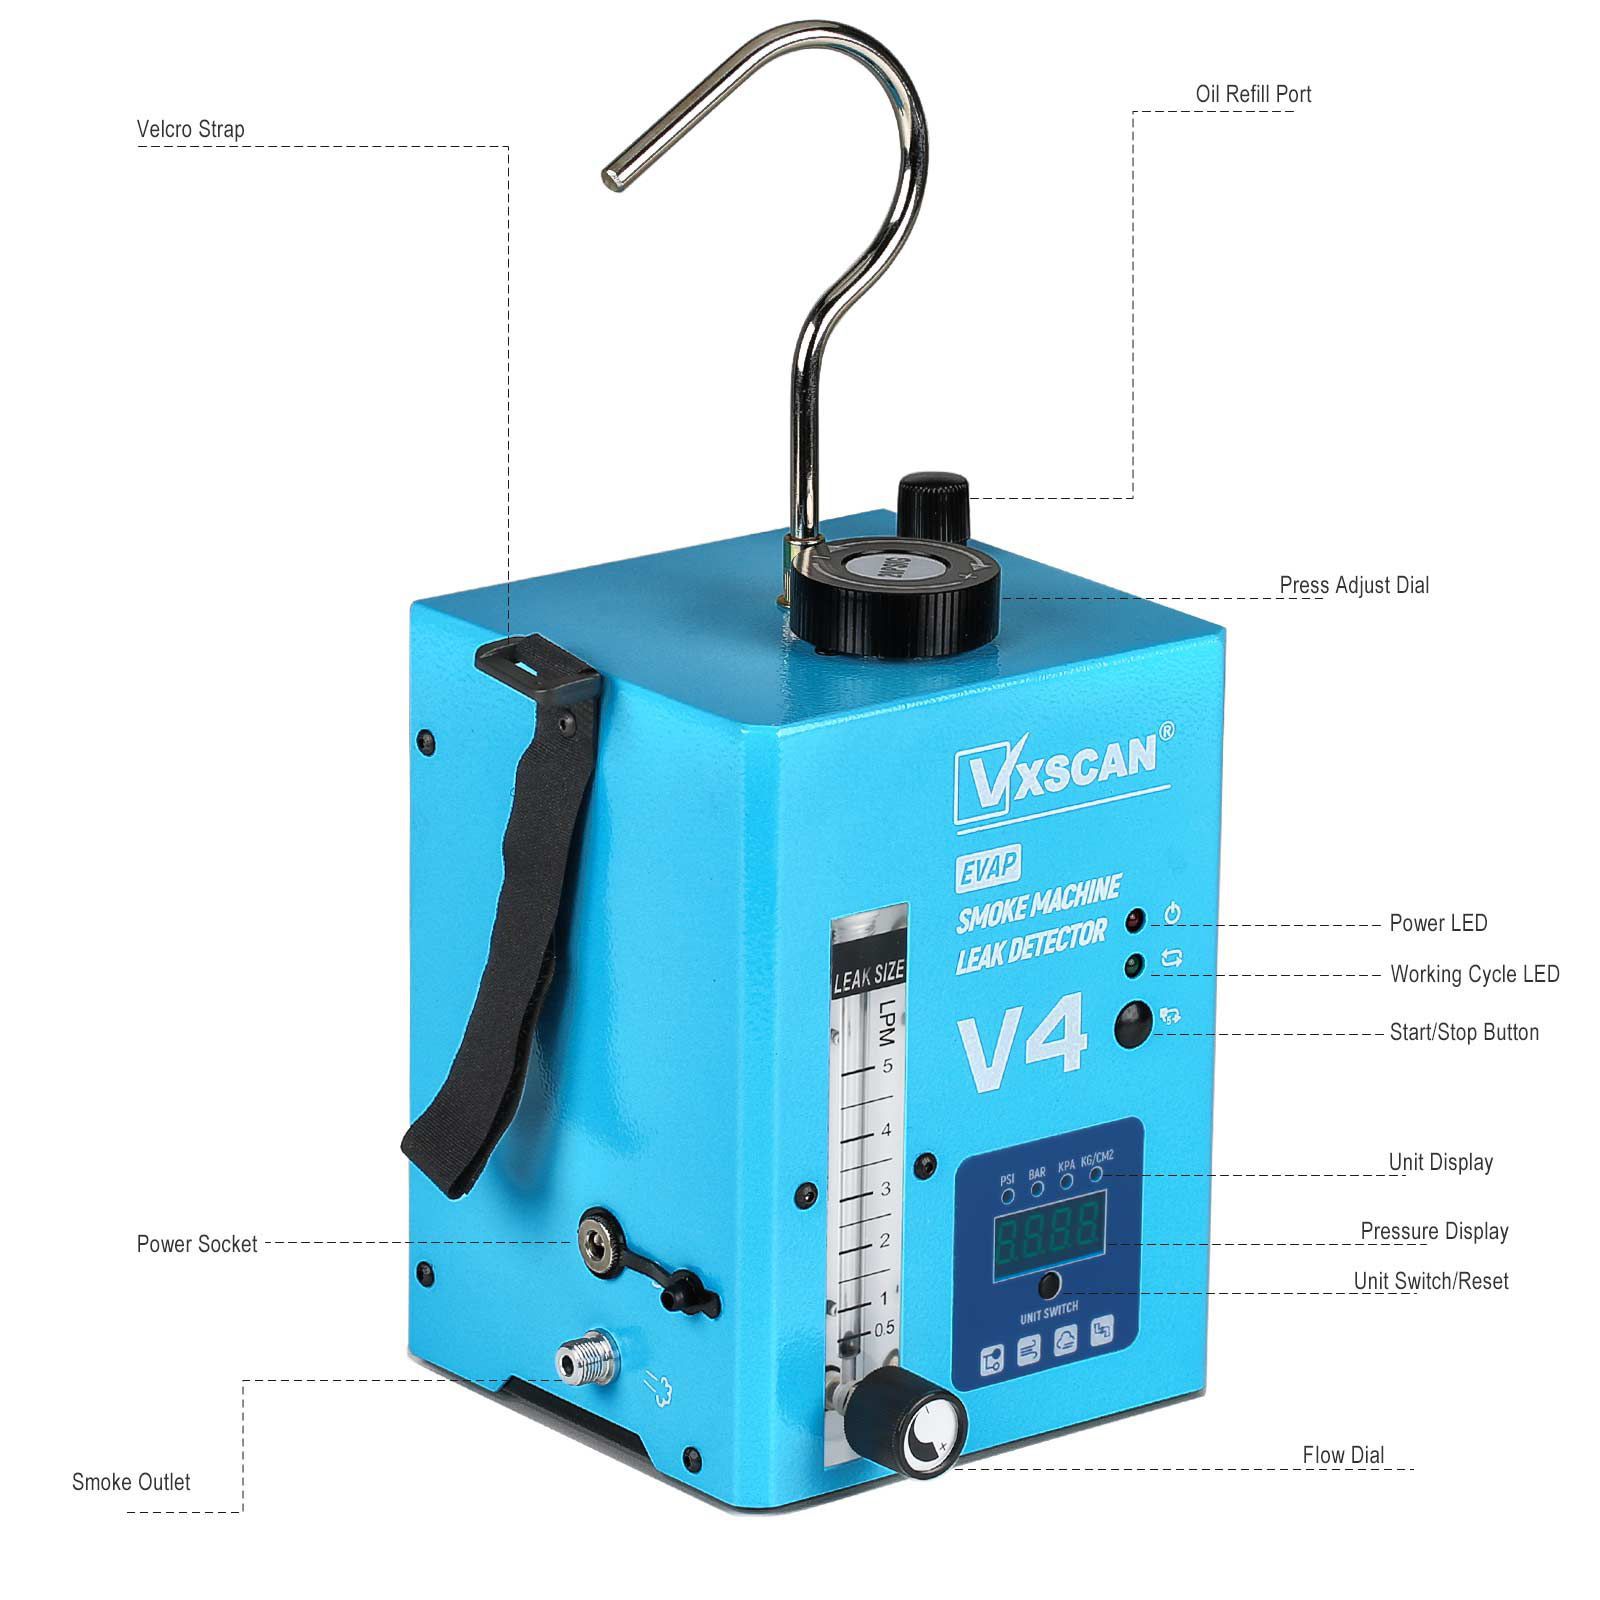 Vxscan V4 détecteur de fumée automobile détecteur de fuite détecteur de fumée sous vide